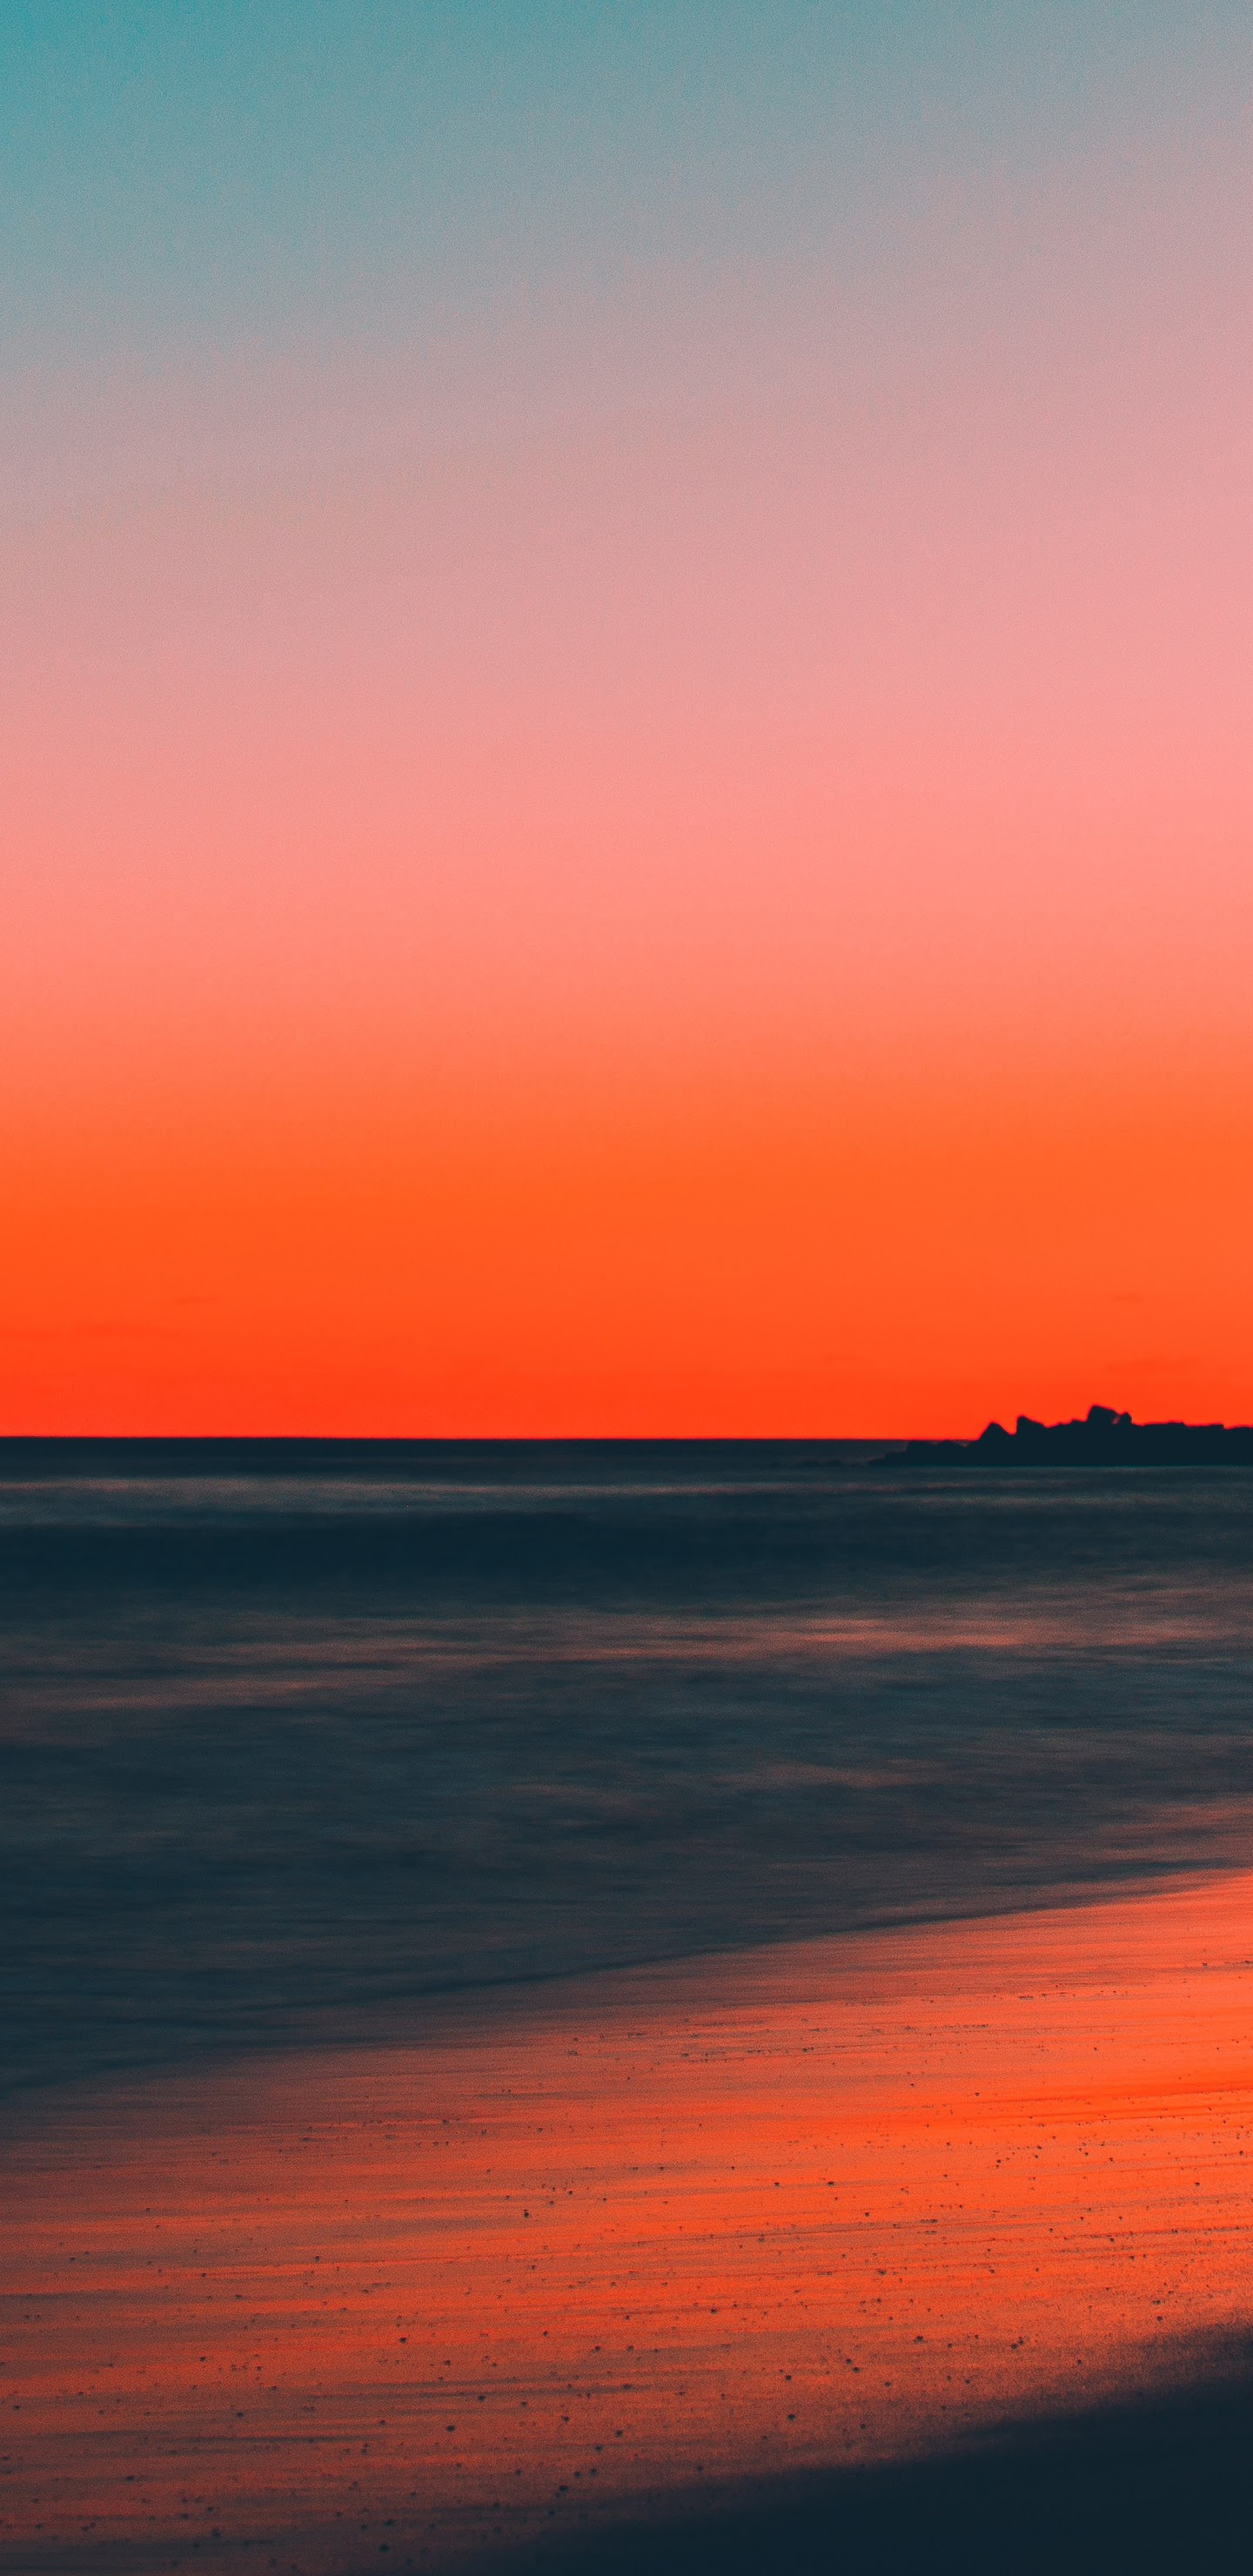 1440x2960 Sunset Beach Sea Horizon Scenery 8K Wallpaper #165